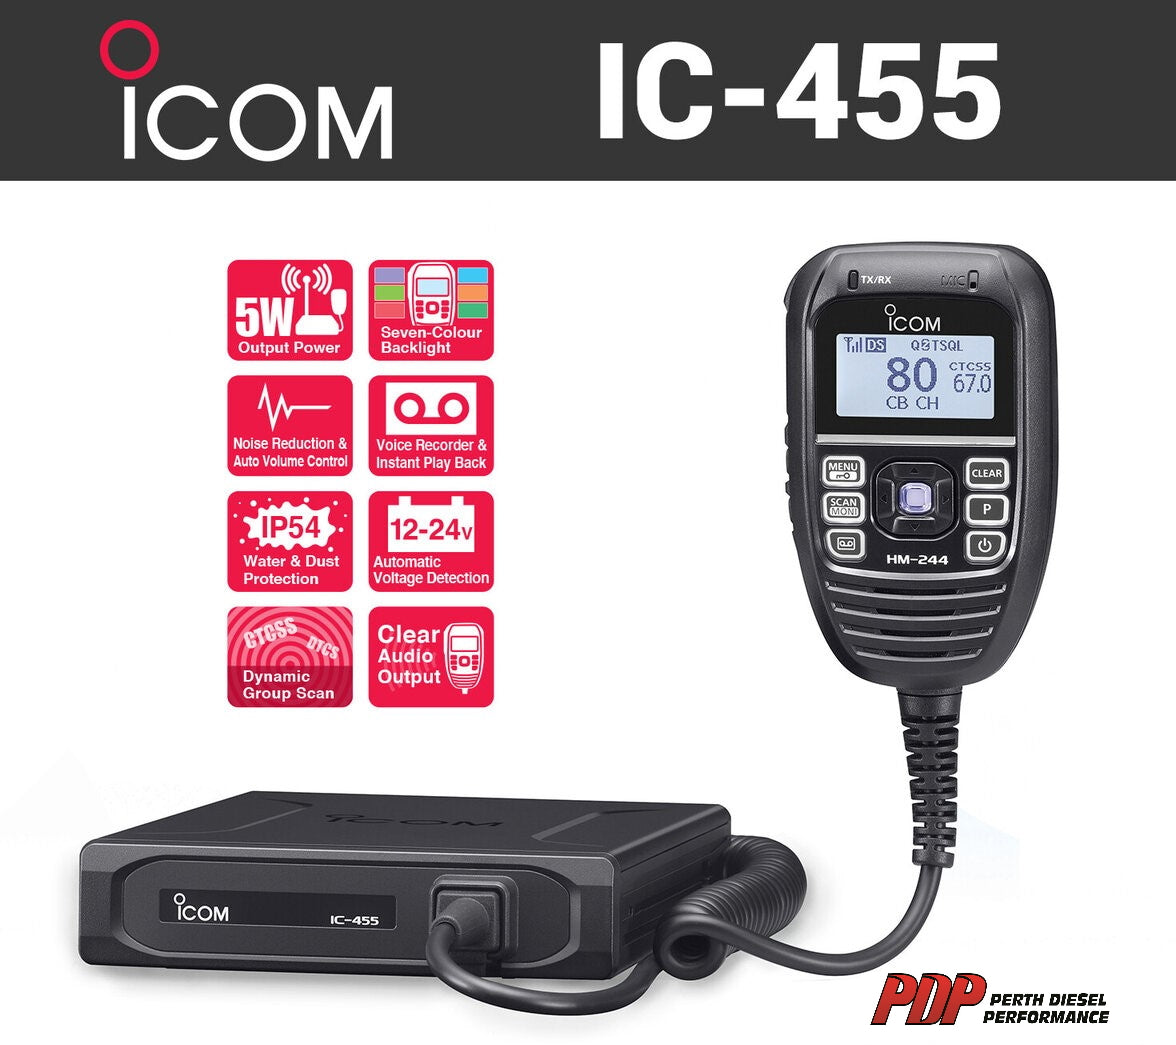 IC-455 UHF CB In-Car Two Way Radio Kit